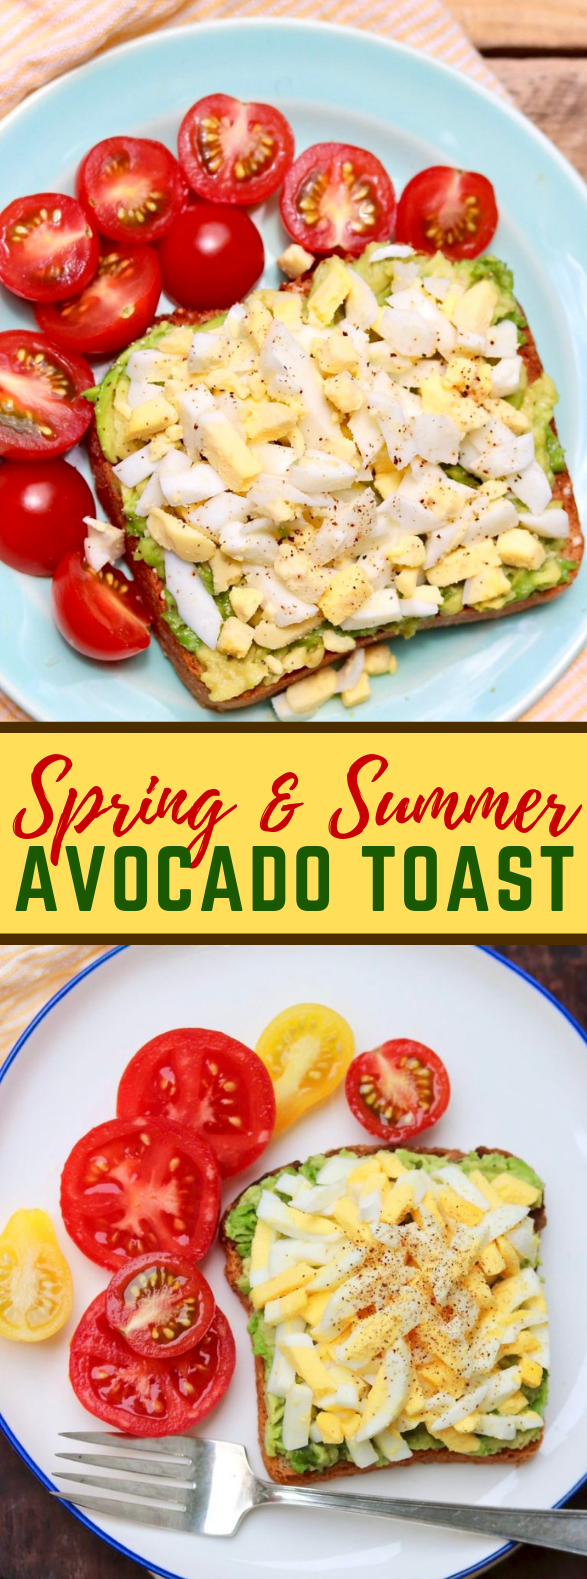 Spring & Summer Avocado Toast #healthy #easy